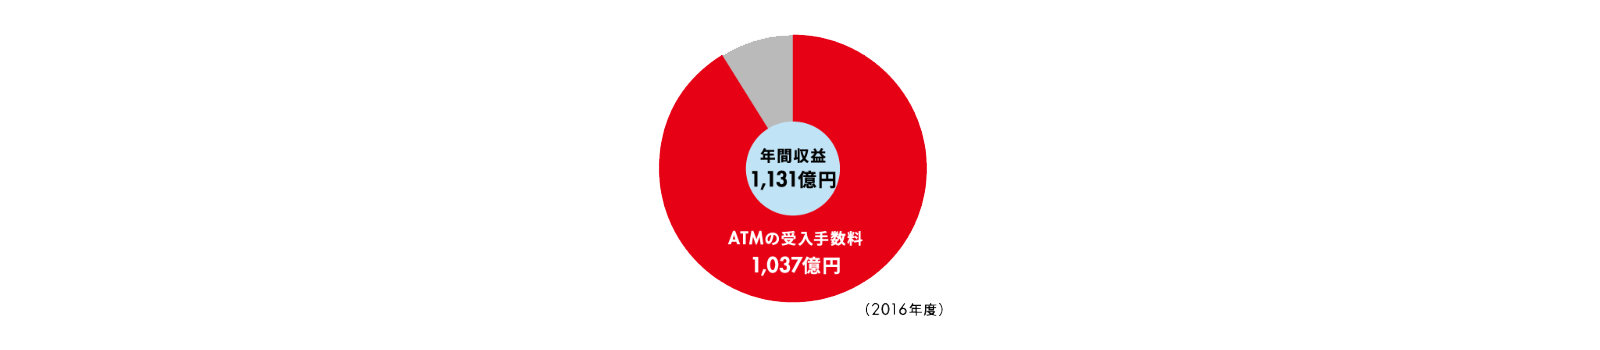 年間収益1,131億円 ATMの受入手数料1,037億円（2016年度）